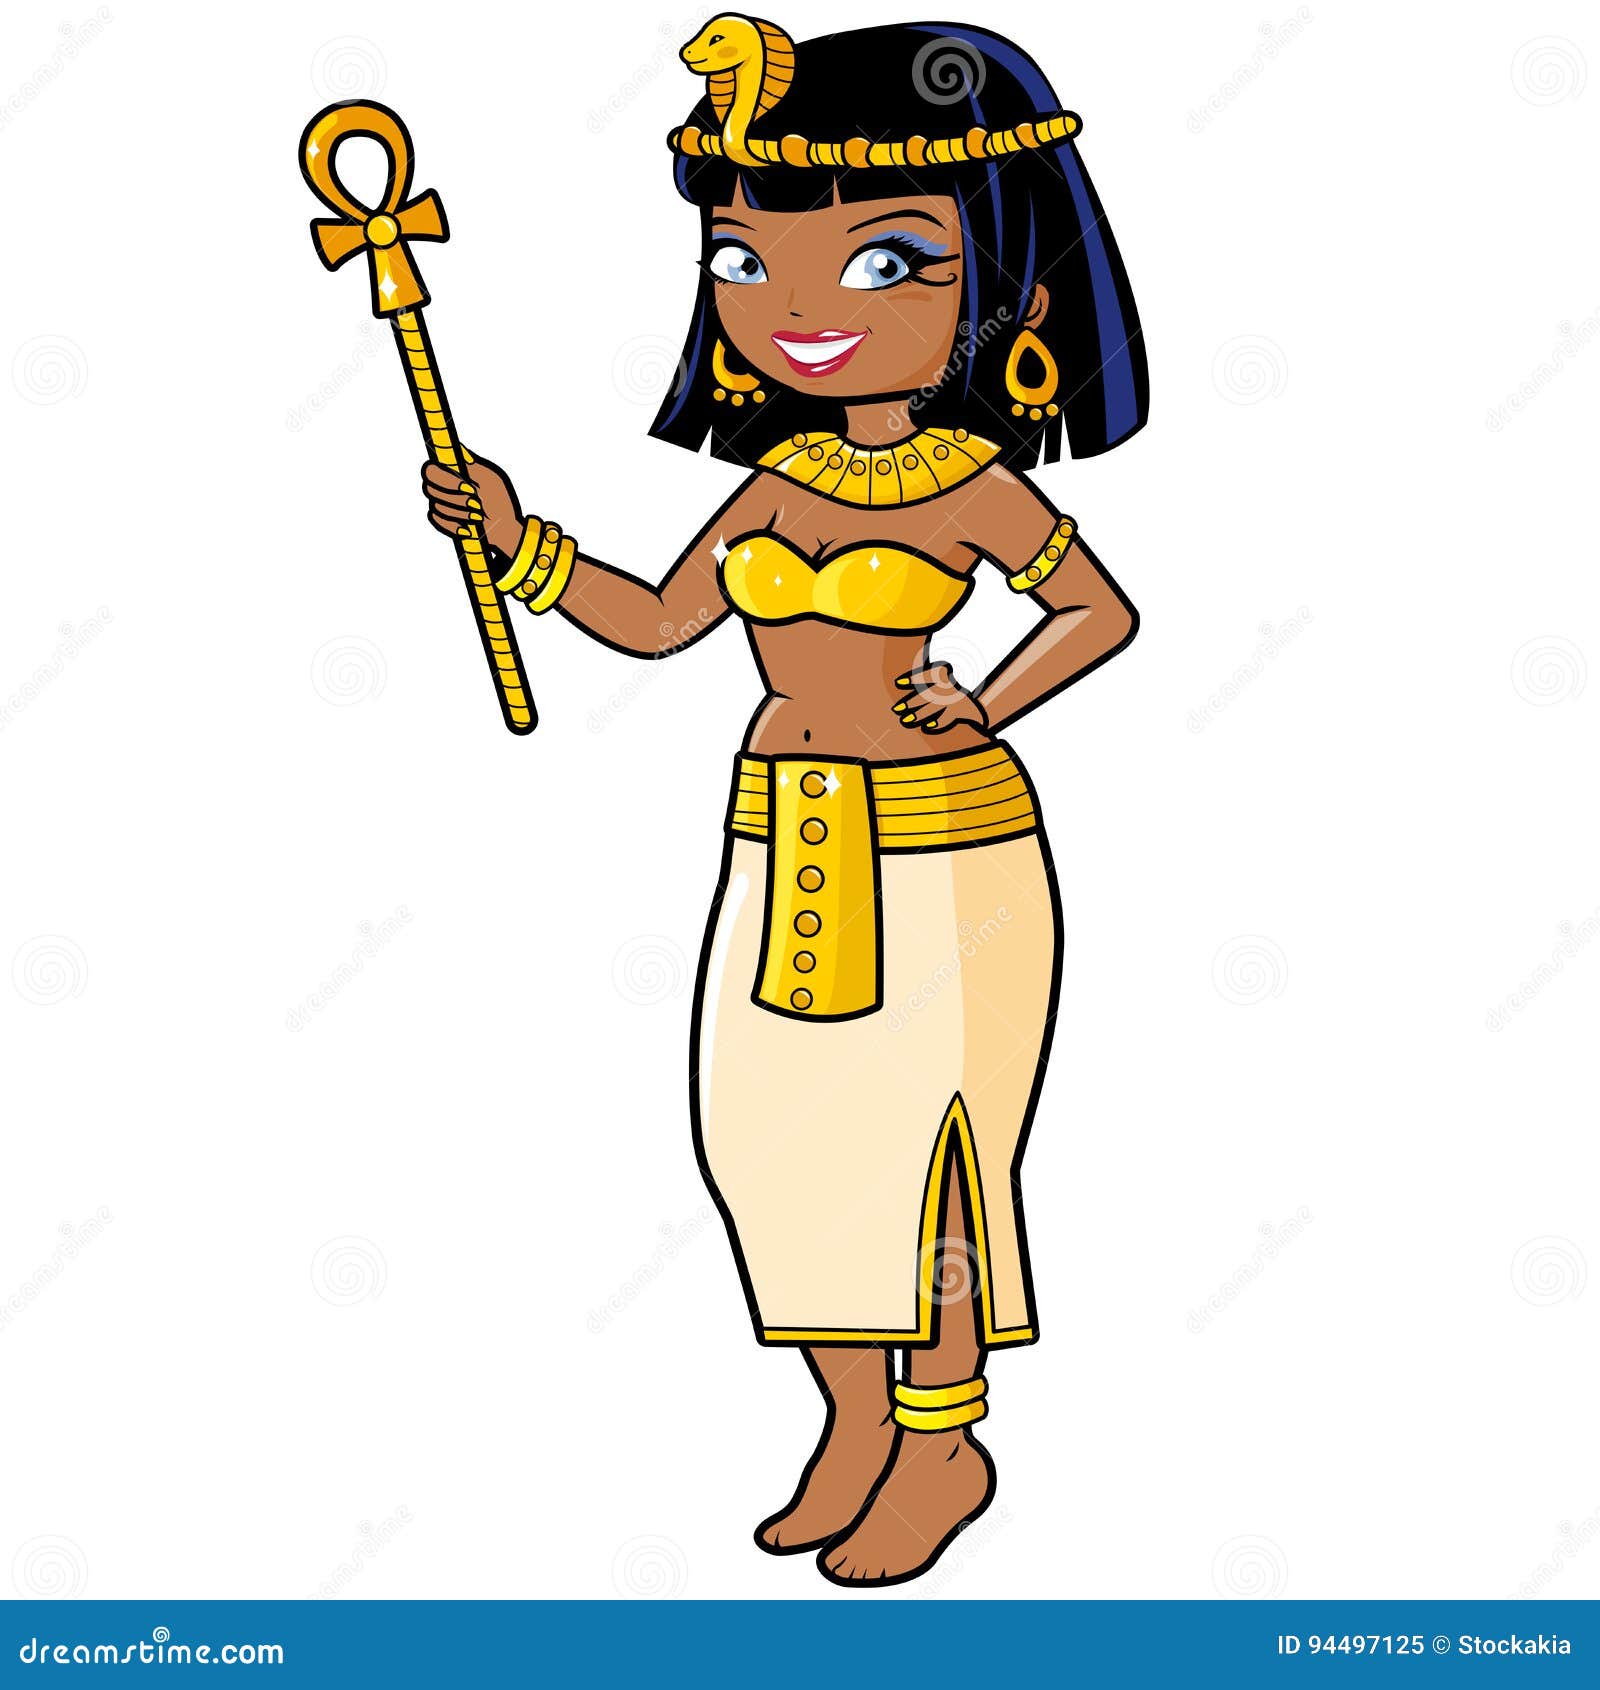 cleopatra comic